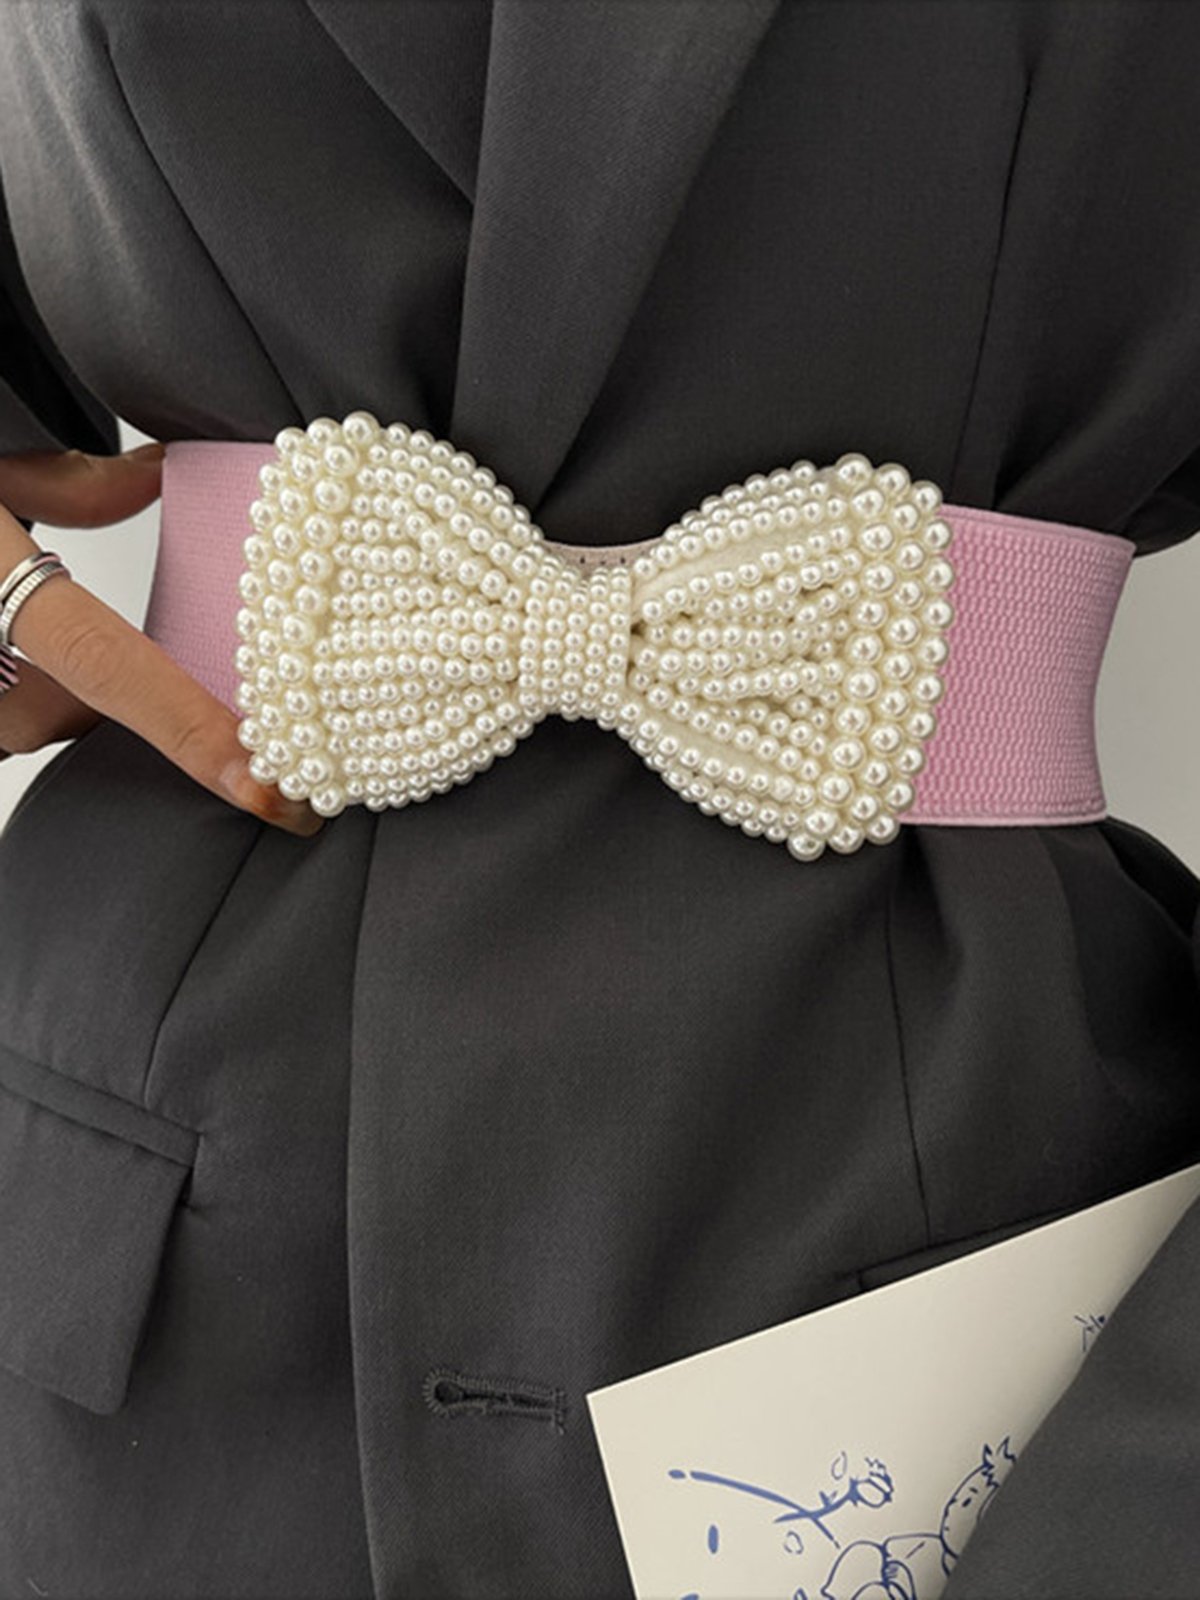 Elegant Nachgemachte Perle Schleife Taille Gürtel Kleid Elastisch Gürtel